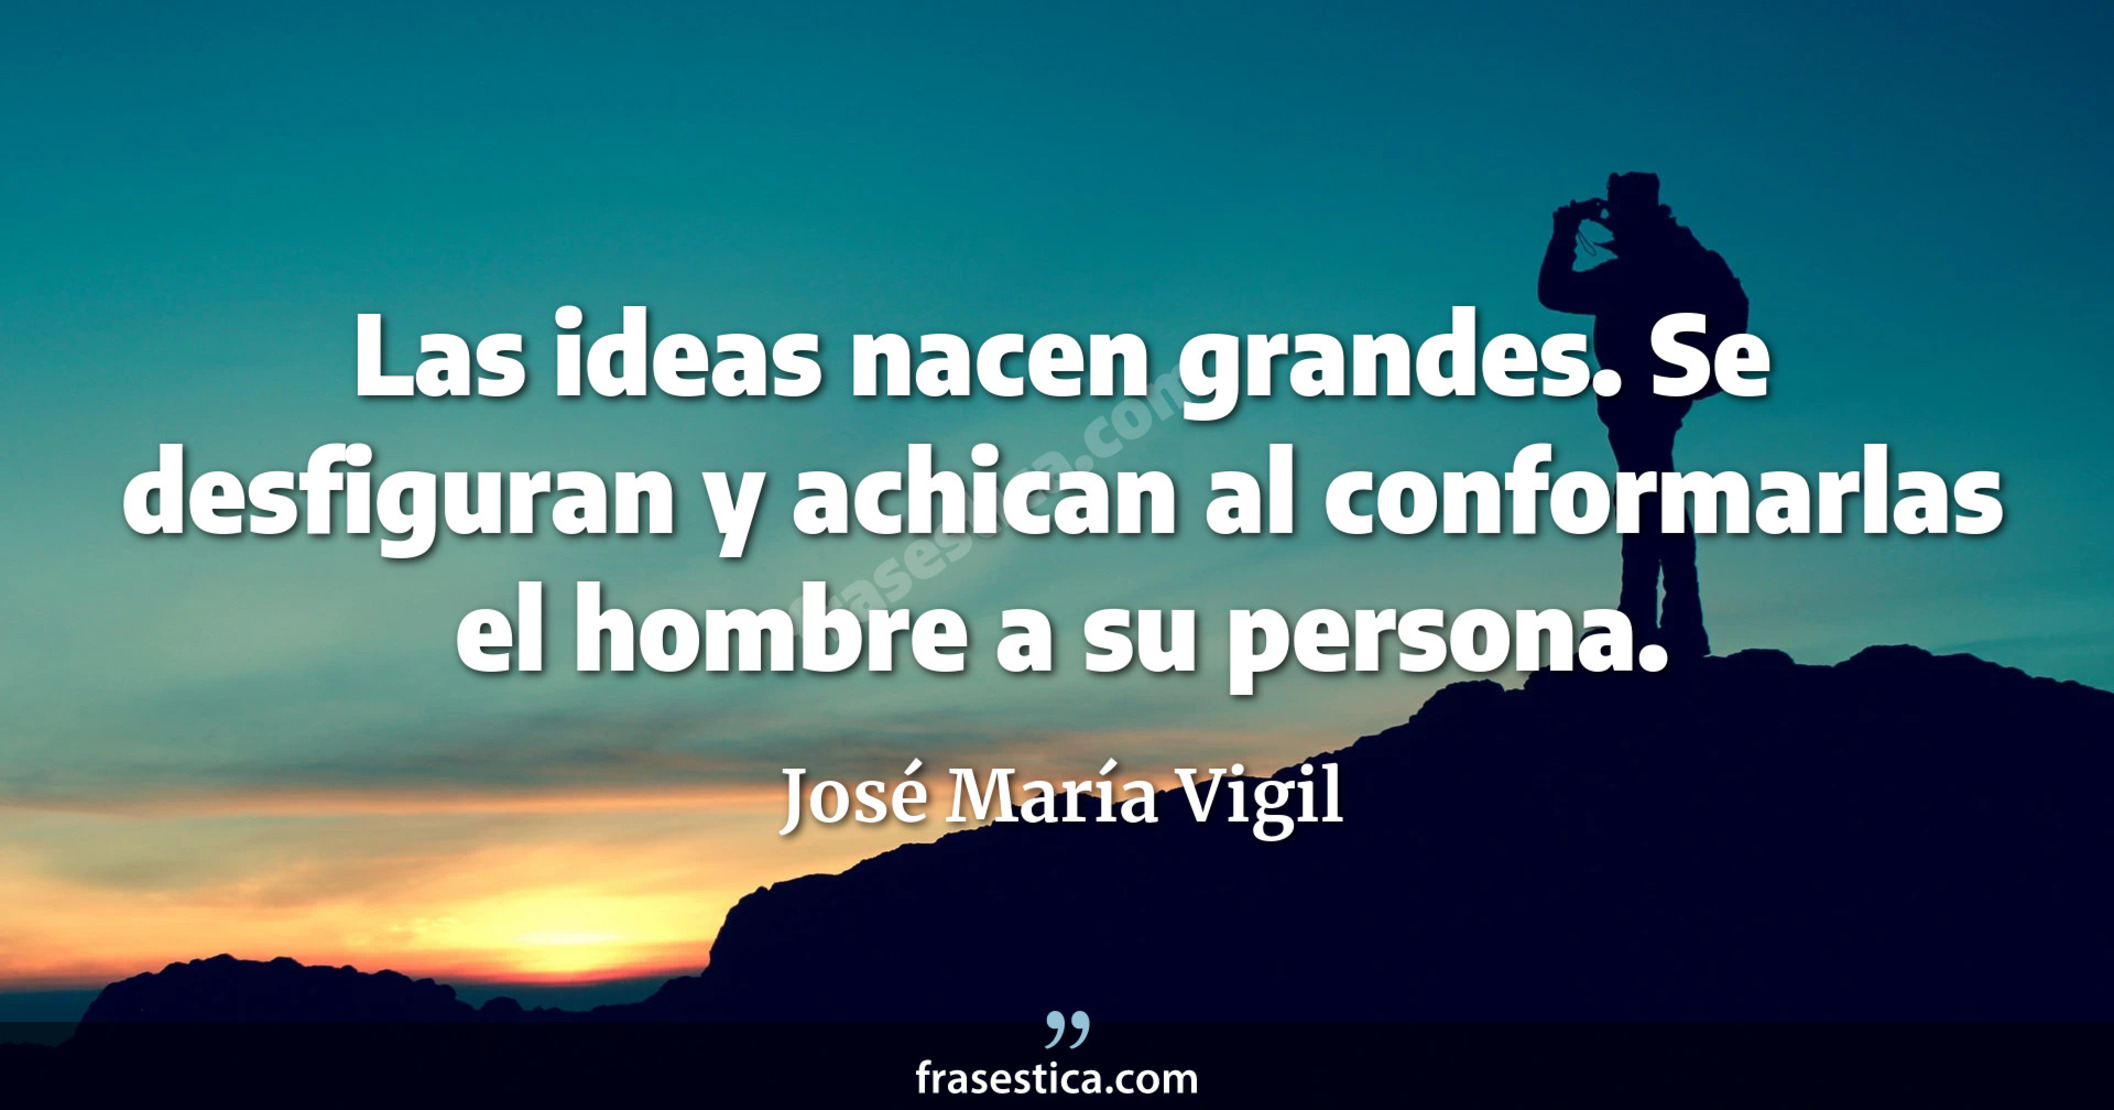 Las ideas nacen grandes. Se desfiguran y achican al conformarlas el hombre a su persona. - José María Vigil